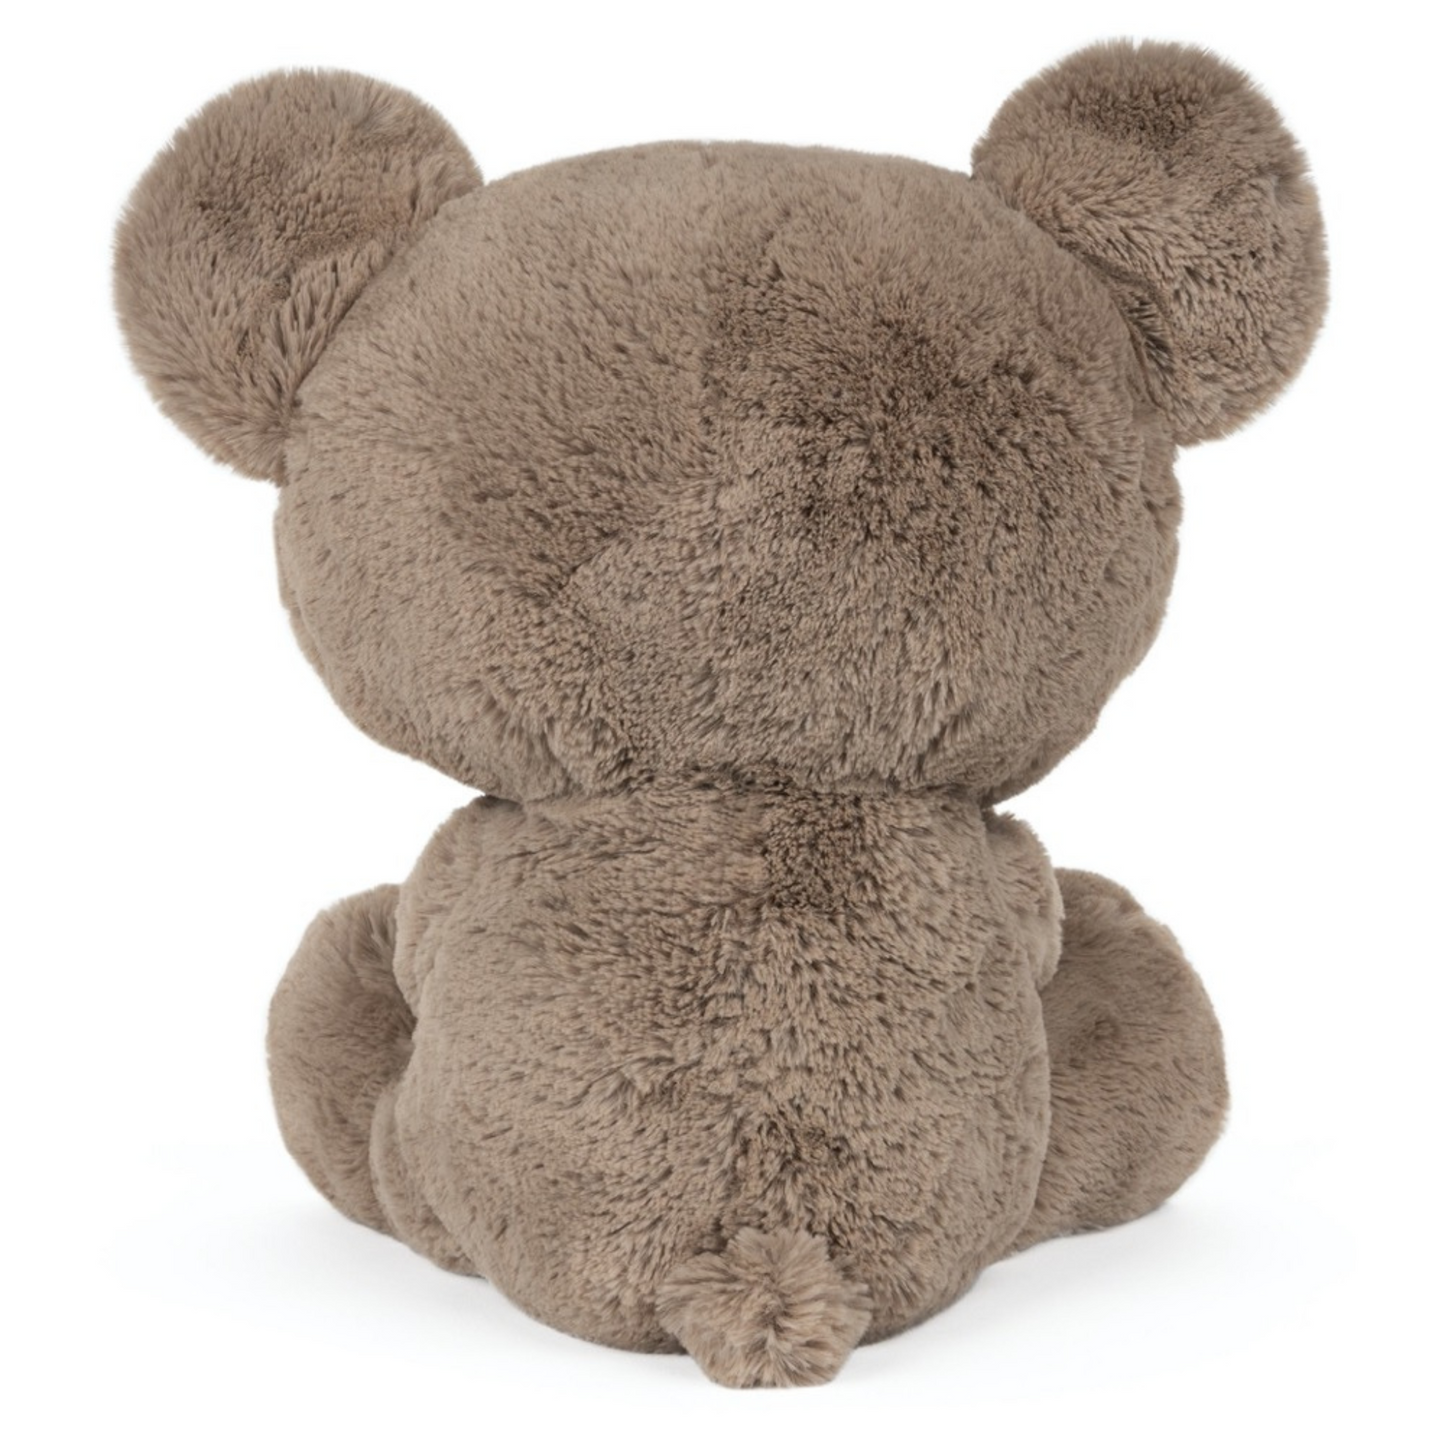 Personalized Gund Kai Teddy Bear (12")